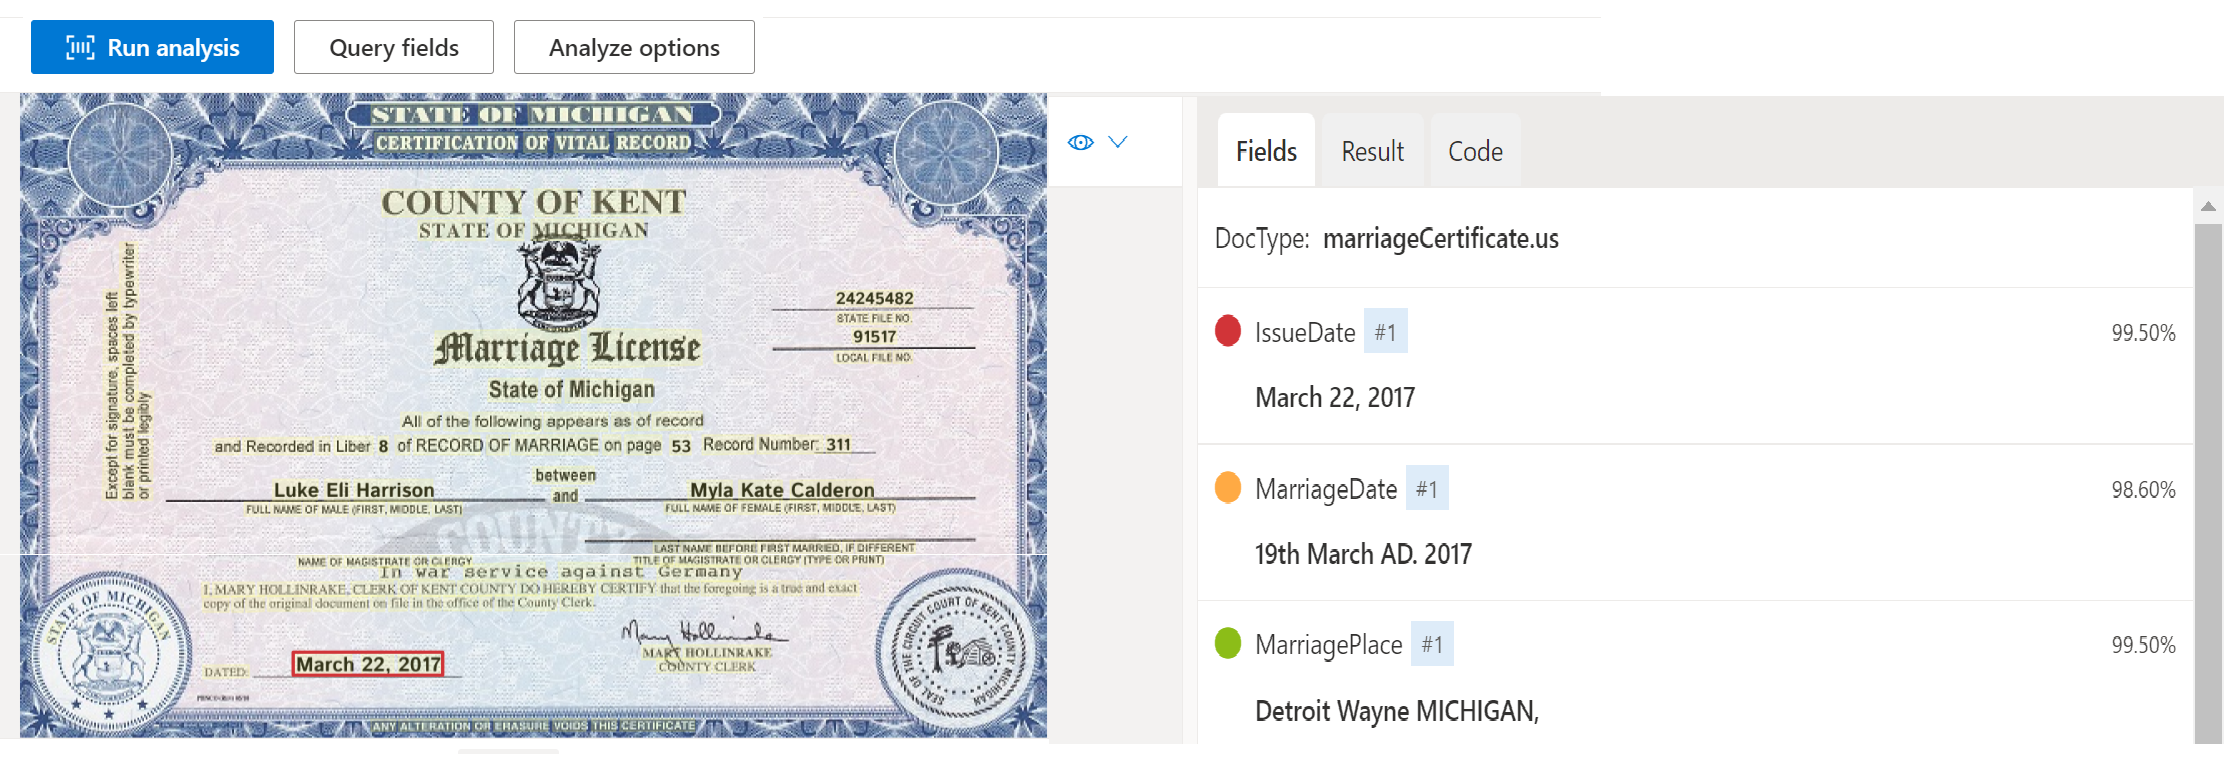 Zrzut ekranu przedstawiający analizę modelu dokumentów certyfikatu małżeństwa przy użyciu programu Document Intelligence Studio.